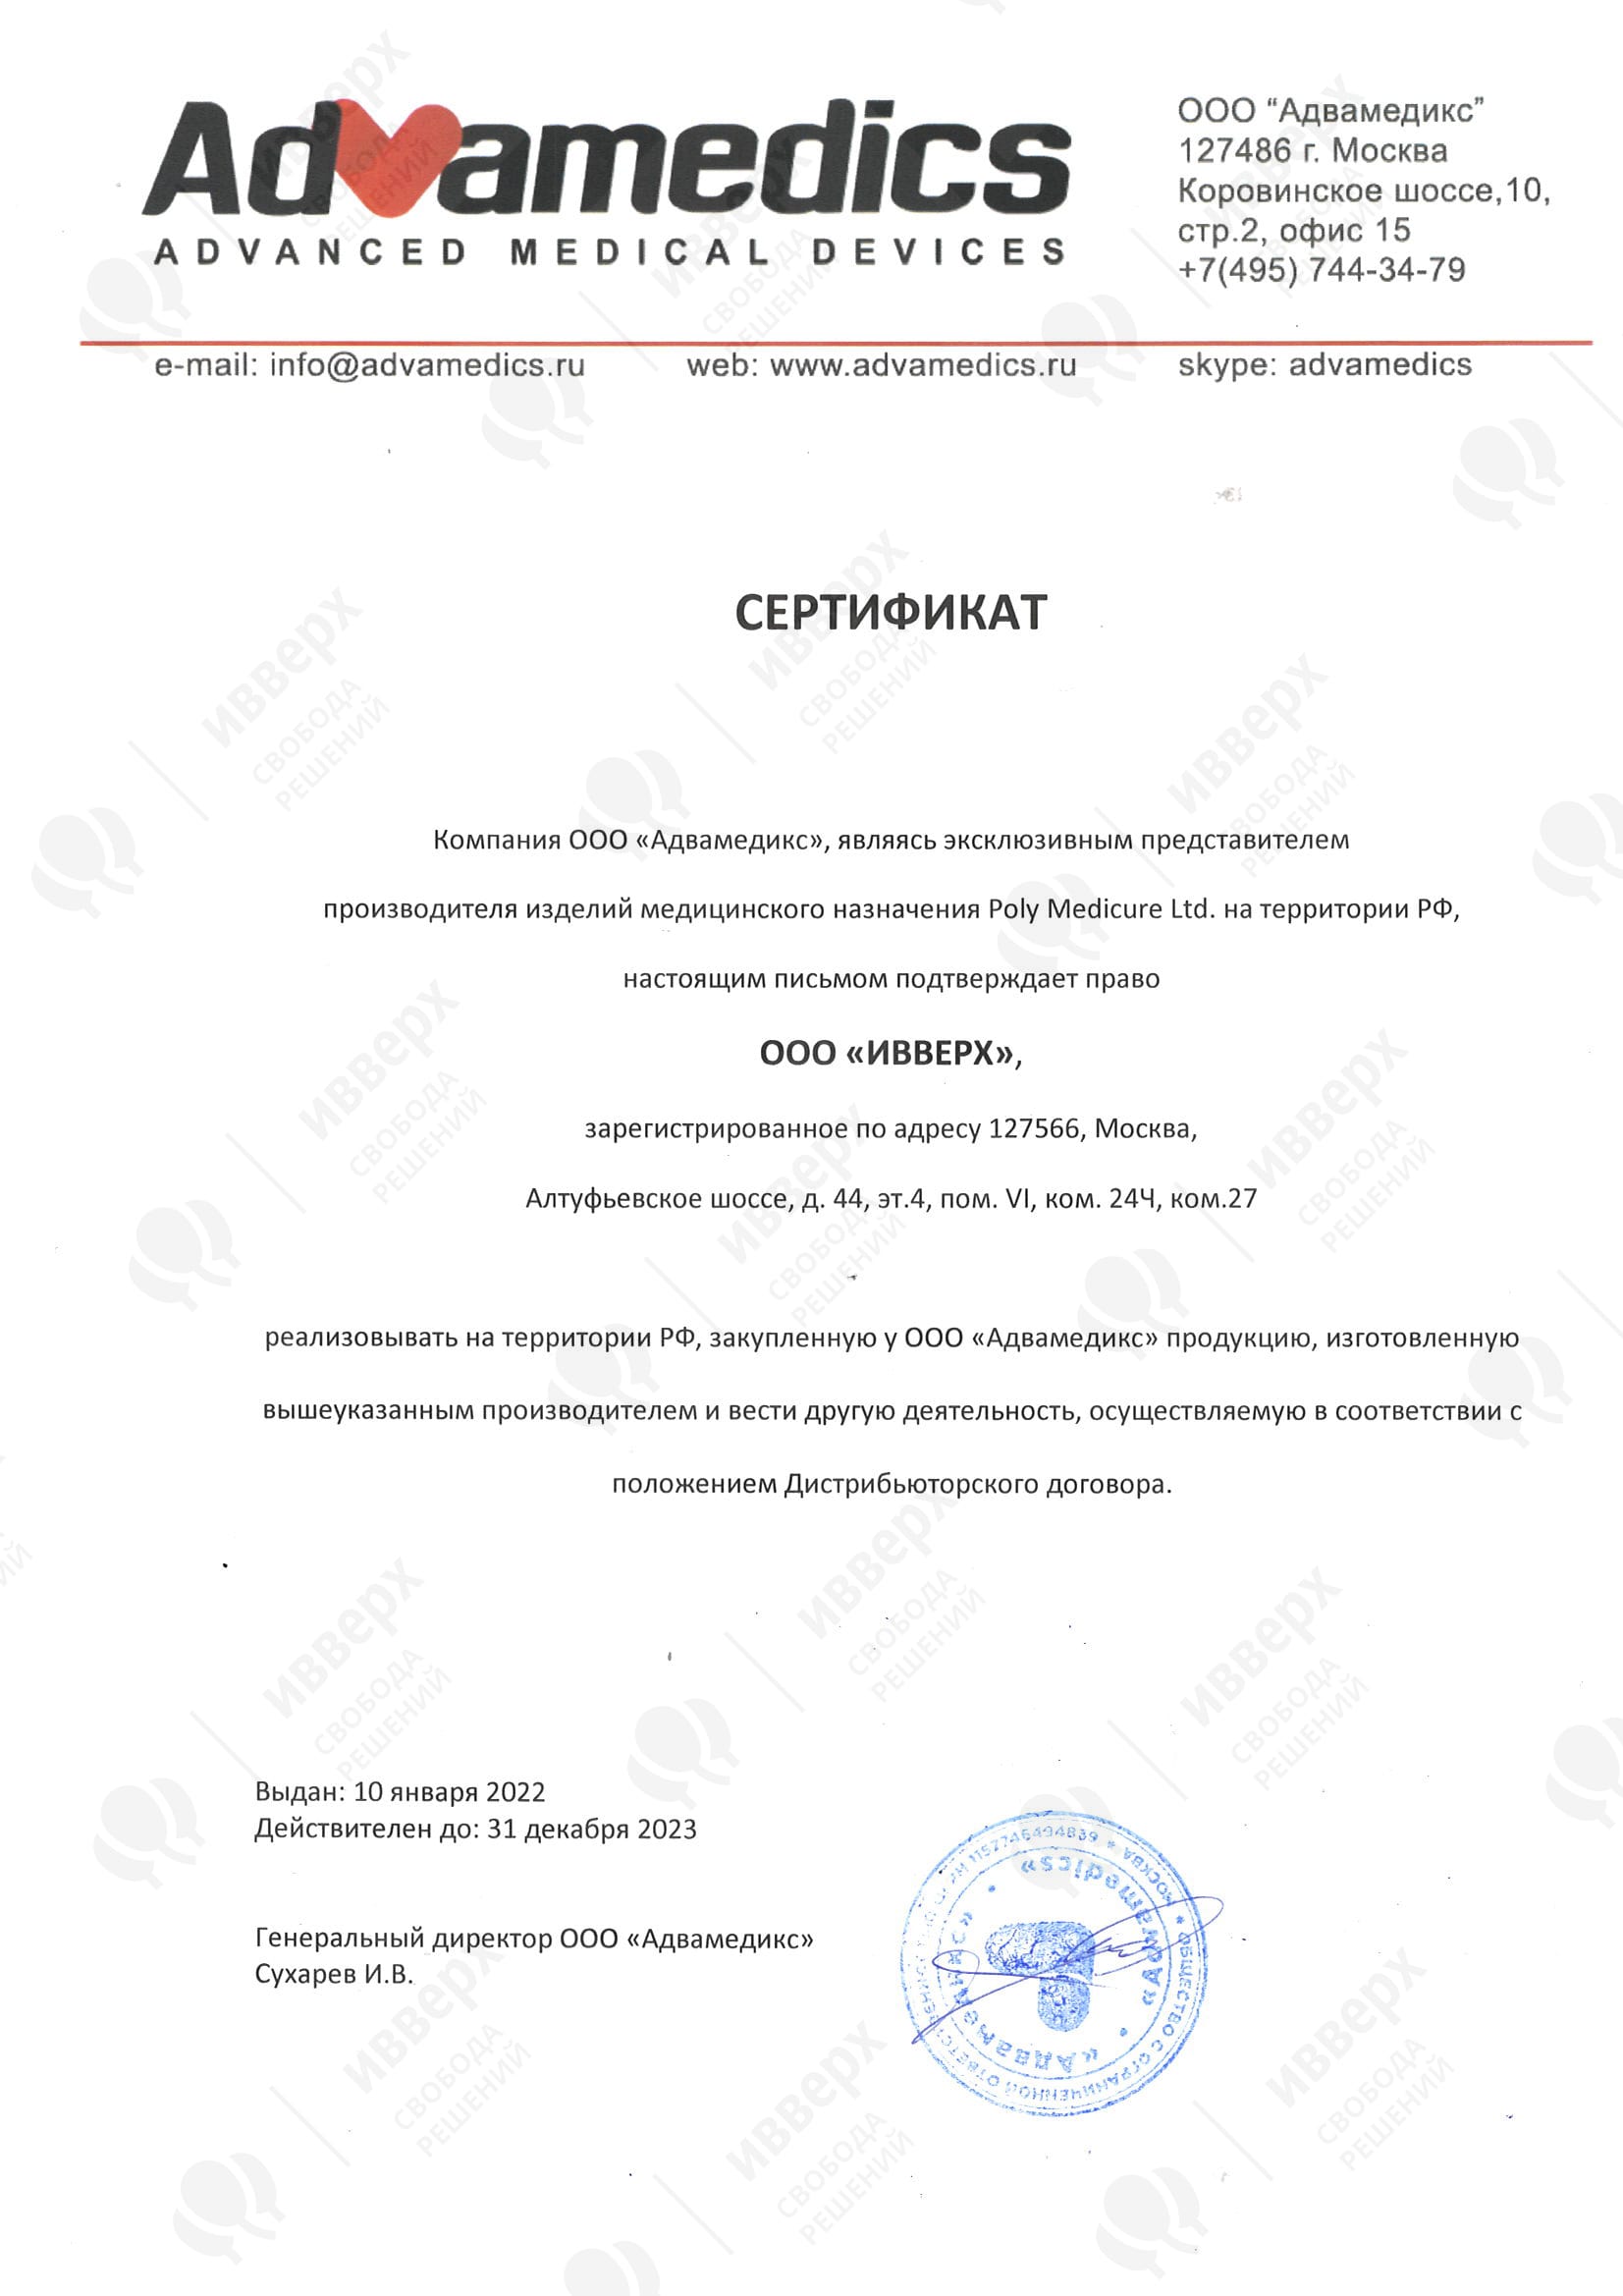 Сертификат Ивверх Poly Medicure Limited 